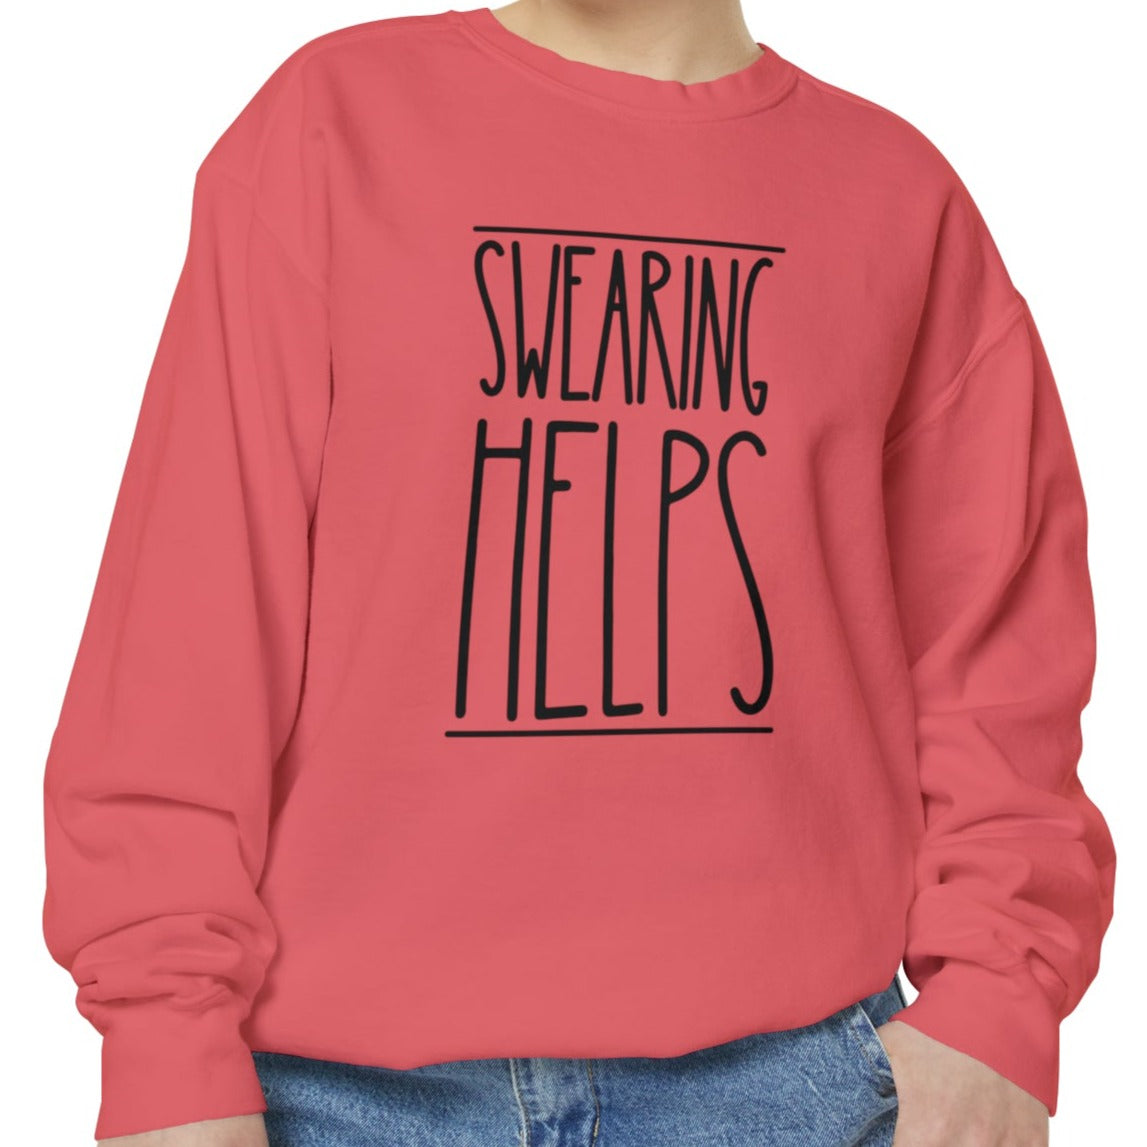 Swearing Helps: Women's Comfort Colors Sweatshirt for Cozy Comfort - Eddy and Rita